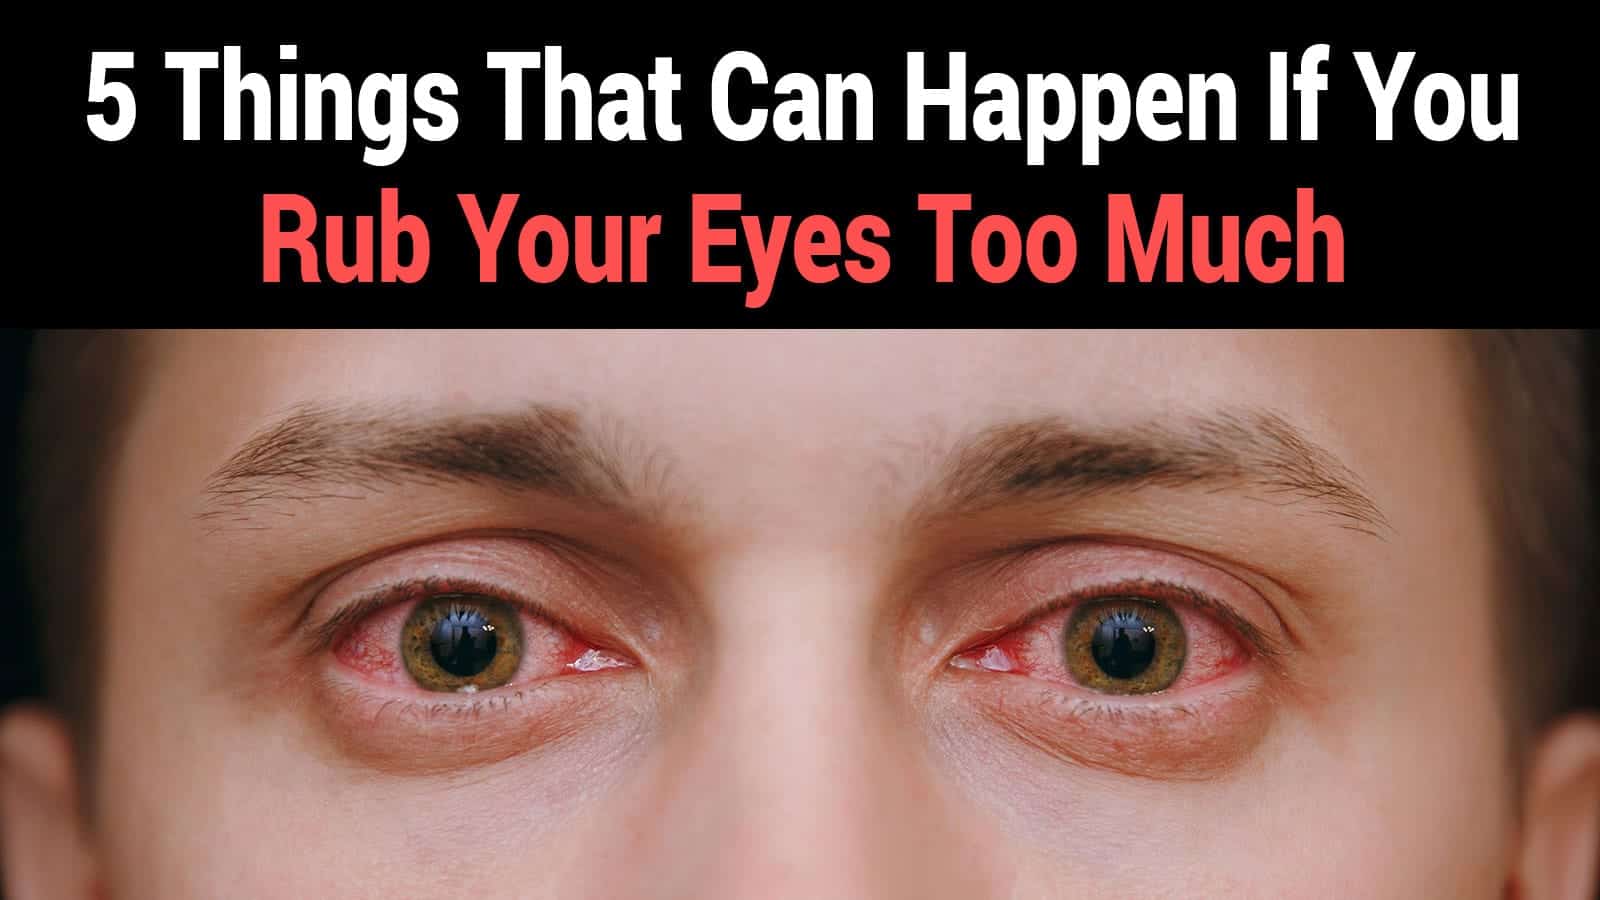 rub your eyes